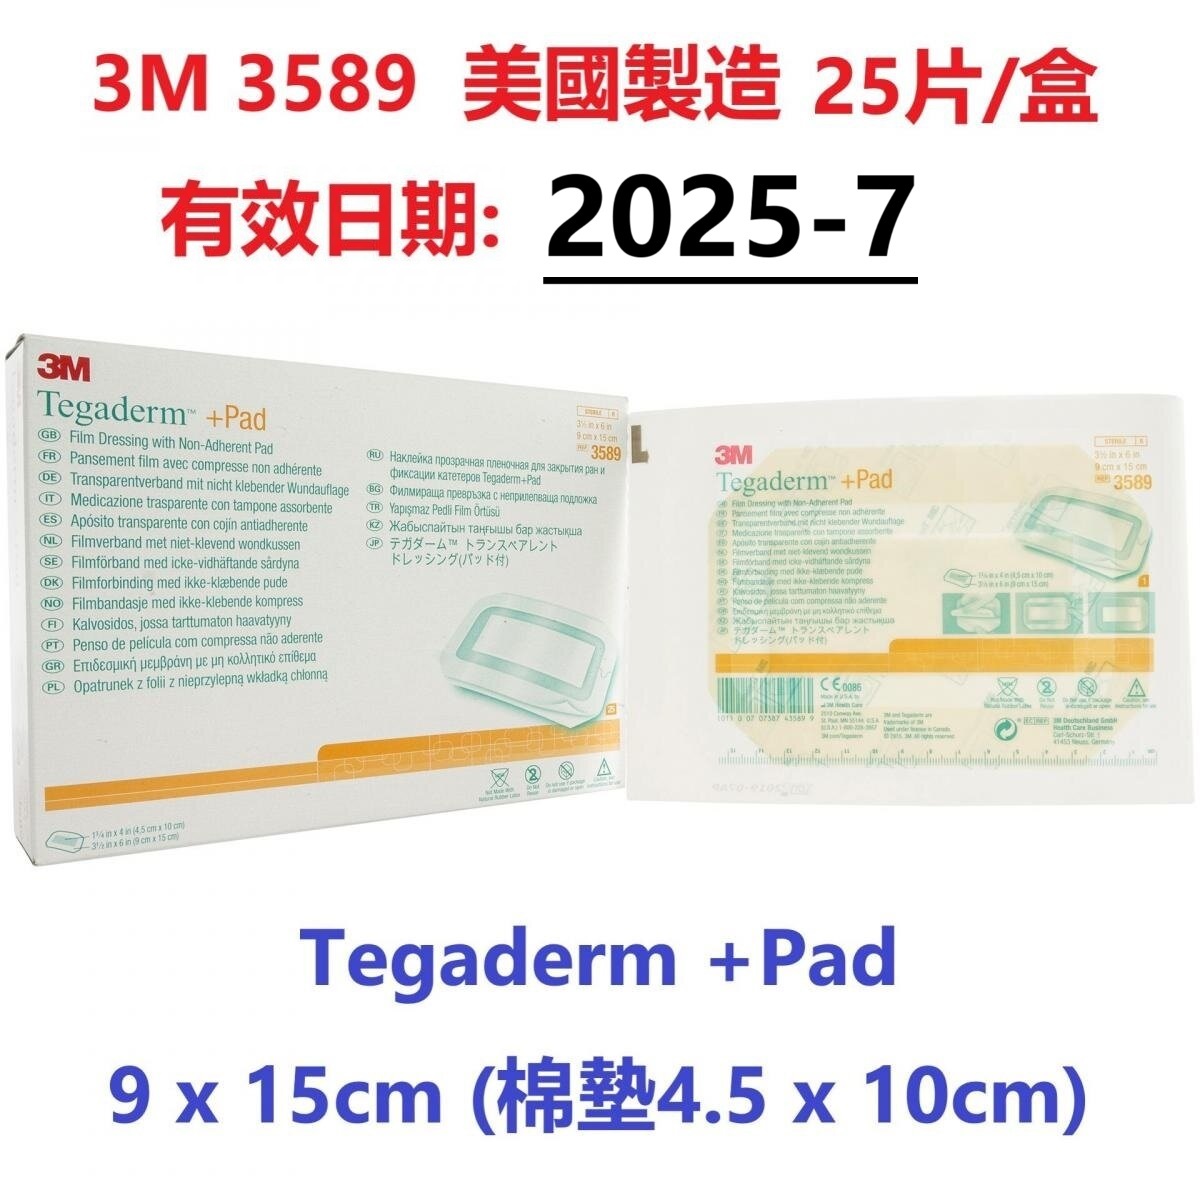 3M 3589 Tegaderm +Pad  9 x 15cm (棉墊4.5 x 10cm) 25片/盒 防水透明薄膜膠布連棉墊